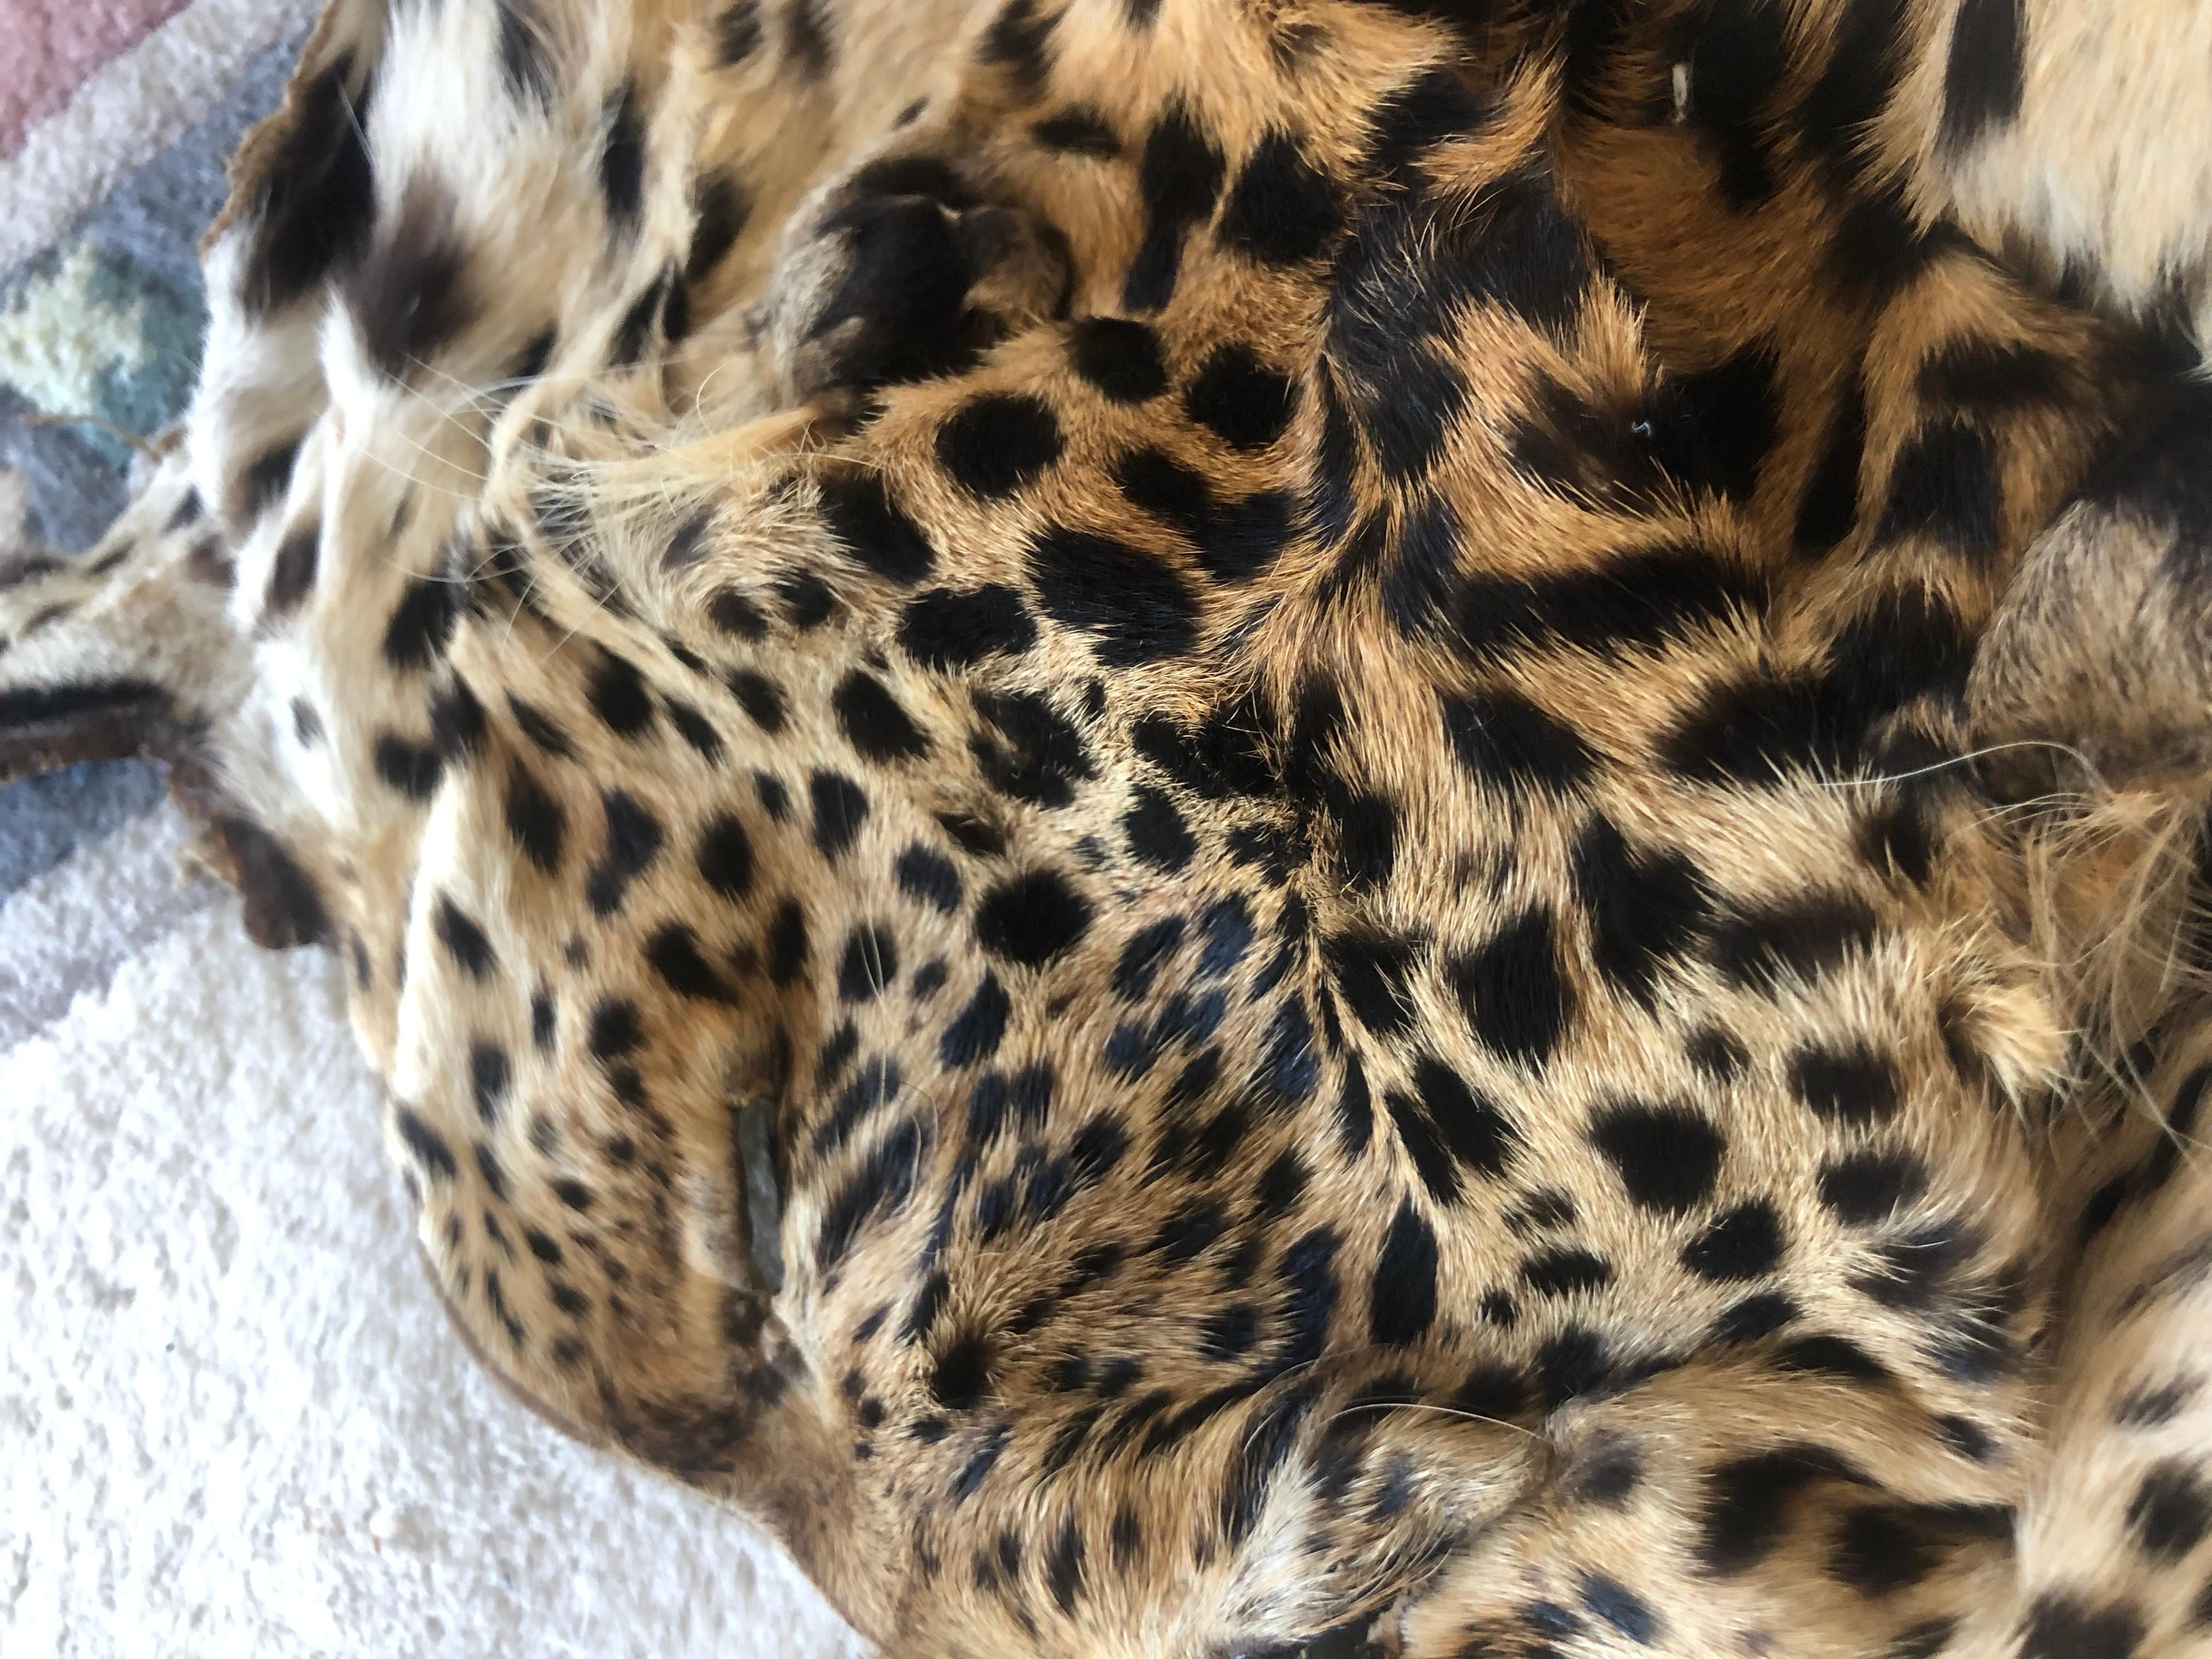 Pièces en véritable fourrure de léopard
Les peaux sont très souples et malléables, douces et fraîches. Elles sont destinées à l'artisanat et aux projets ou à la décoration. 
Les poils ne tombent pas
Une belle pièce pour la curiosité ou pour réaliser